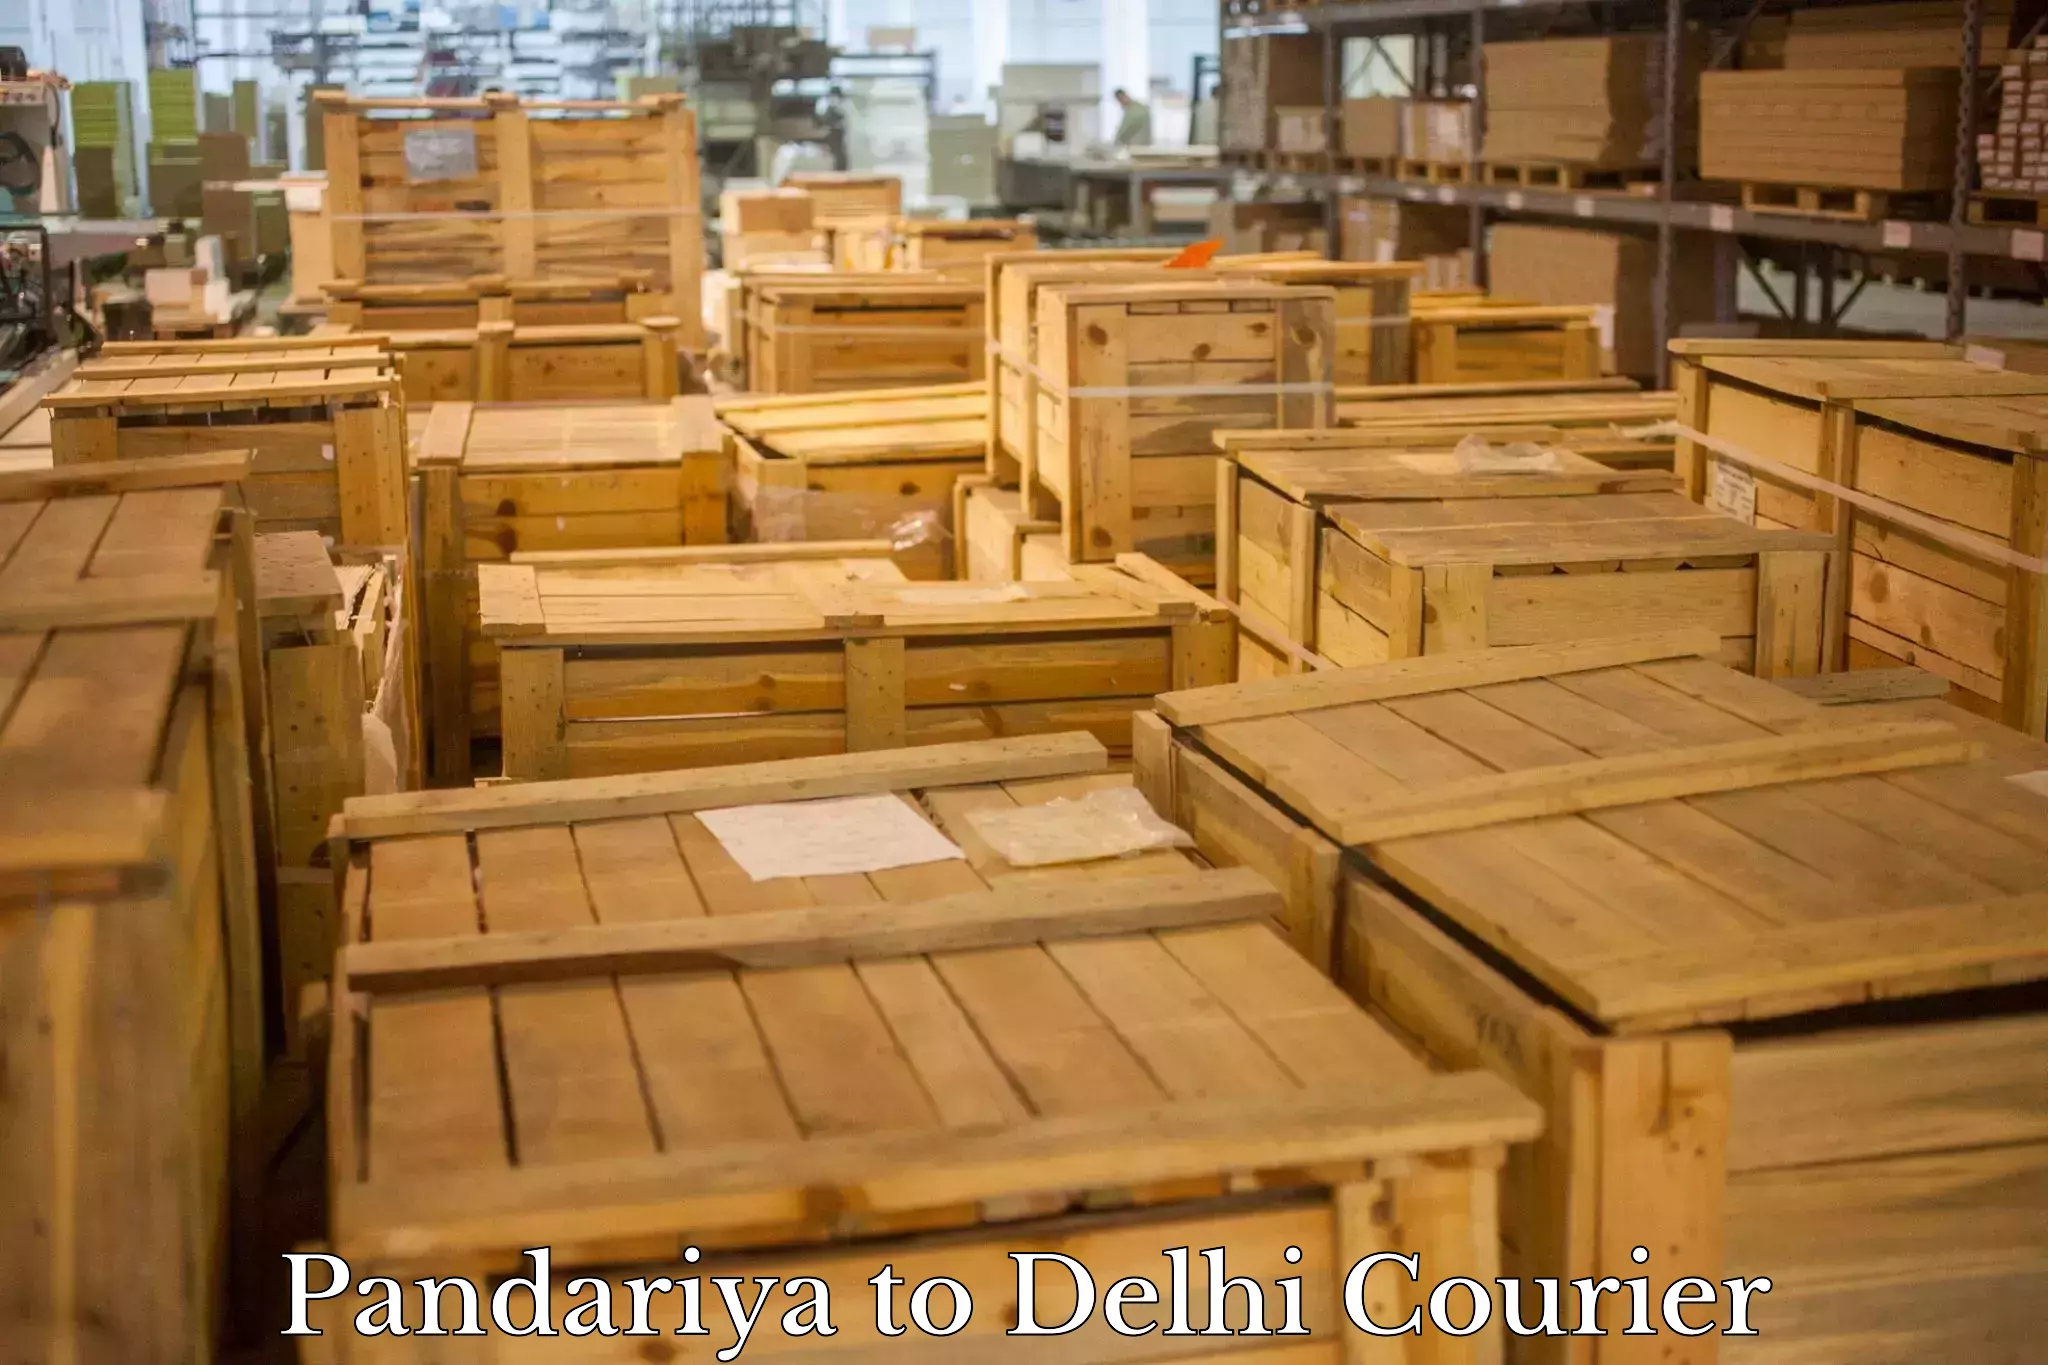 Courier service comparison Pandariya to Krishna Nagar